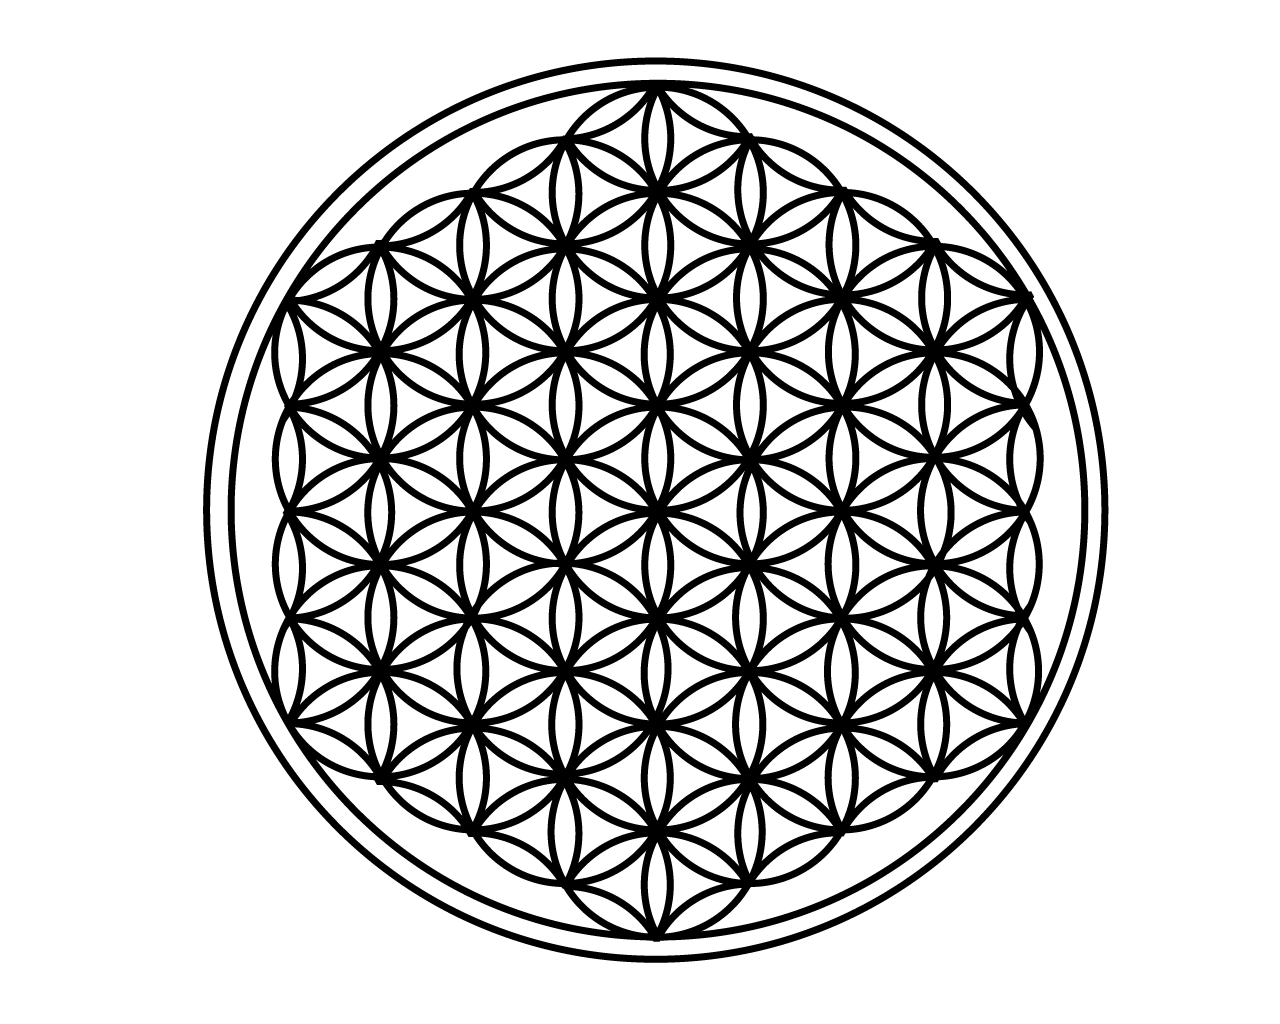 フラワー・オブ・ライフは「等間隔に7つかそれ以上の円を重ねた幾何学図形の名前」そして「全て黄金分割された究極の調和のバランスを持った図形」